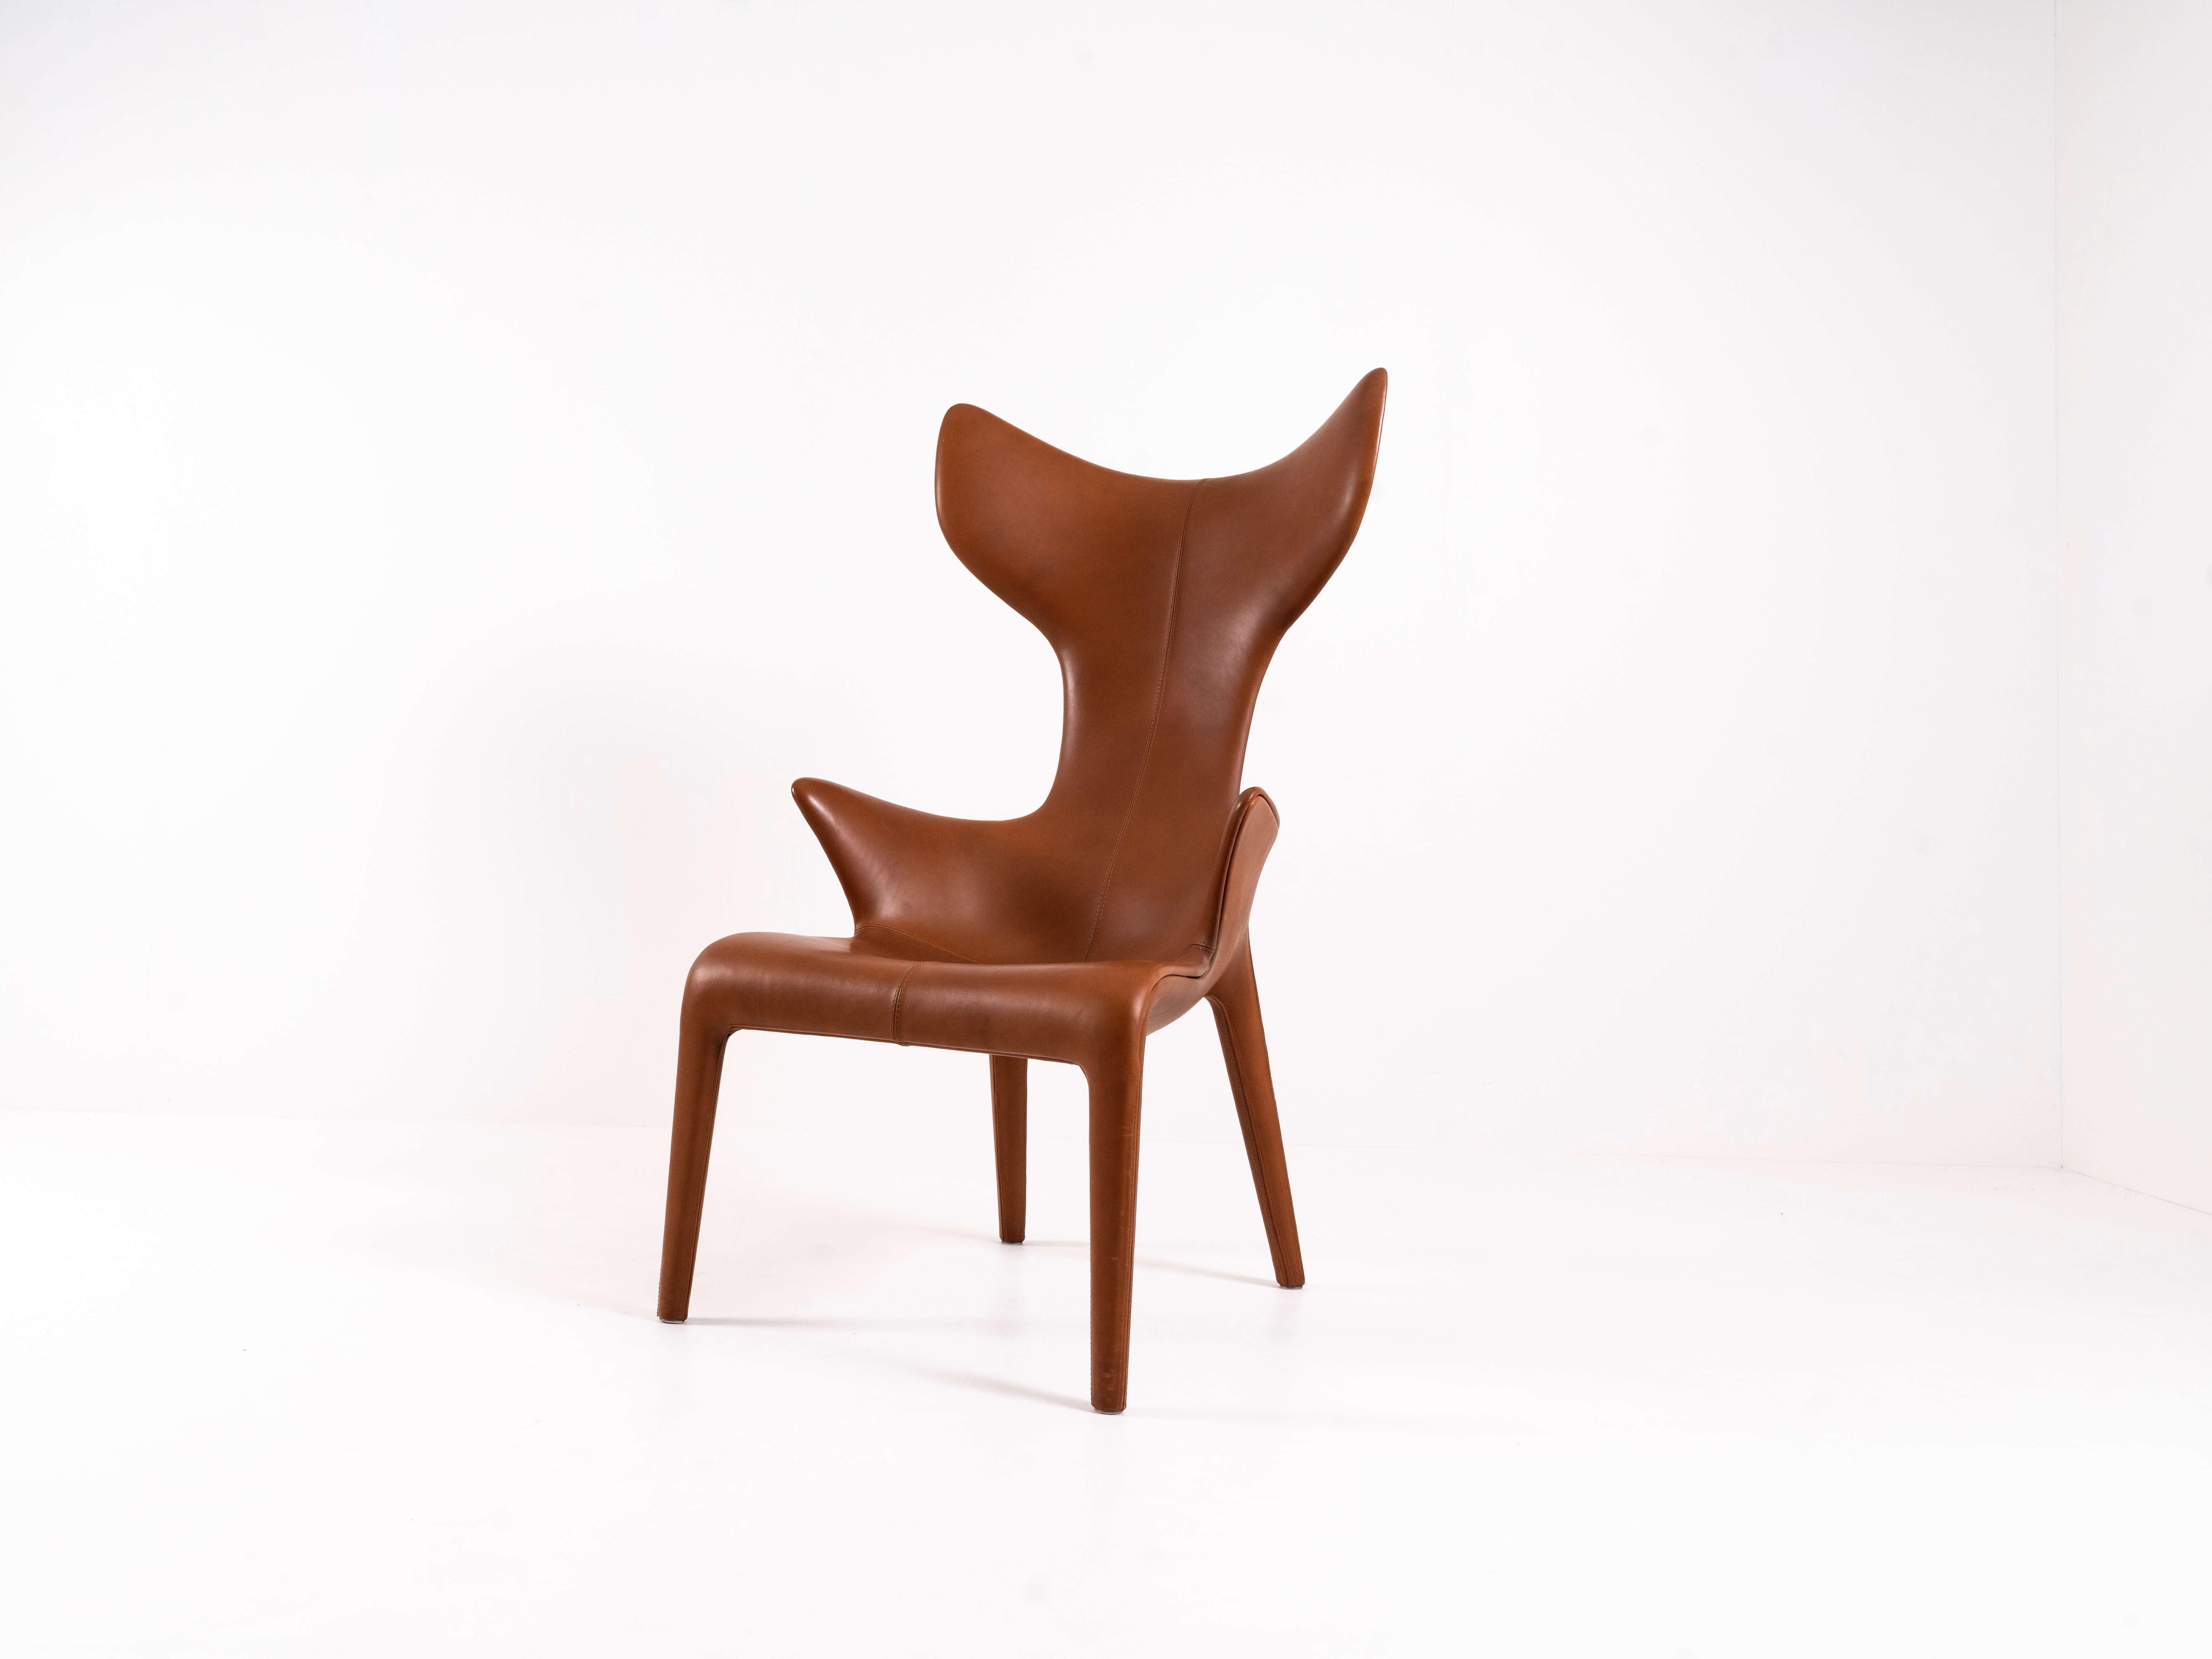 Chaise longue en cuir 'Lou Read' pour Driade. Ce fauteuil emblématique est conçu par Philippe Starck et Eugenio Quitllet. Ce modèle est conçu pour l'hôtel Monceau à Paris. La forme est très organique. Il a une structure en polyuréthane avec un